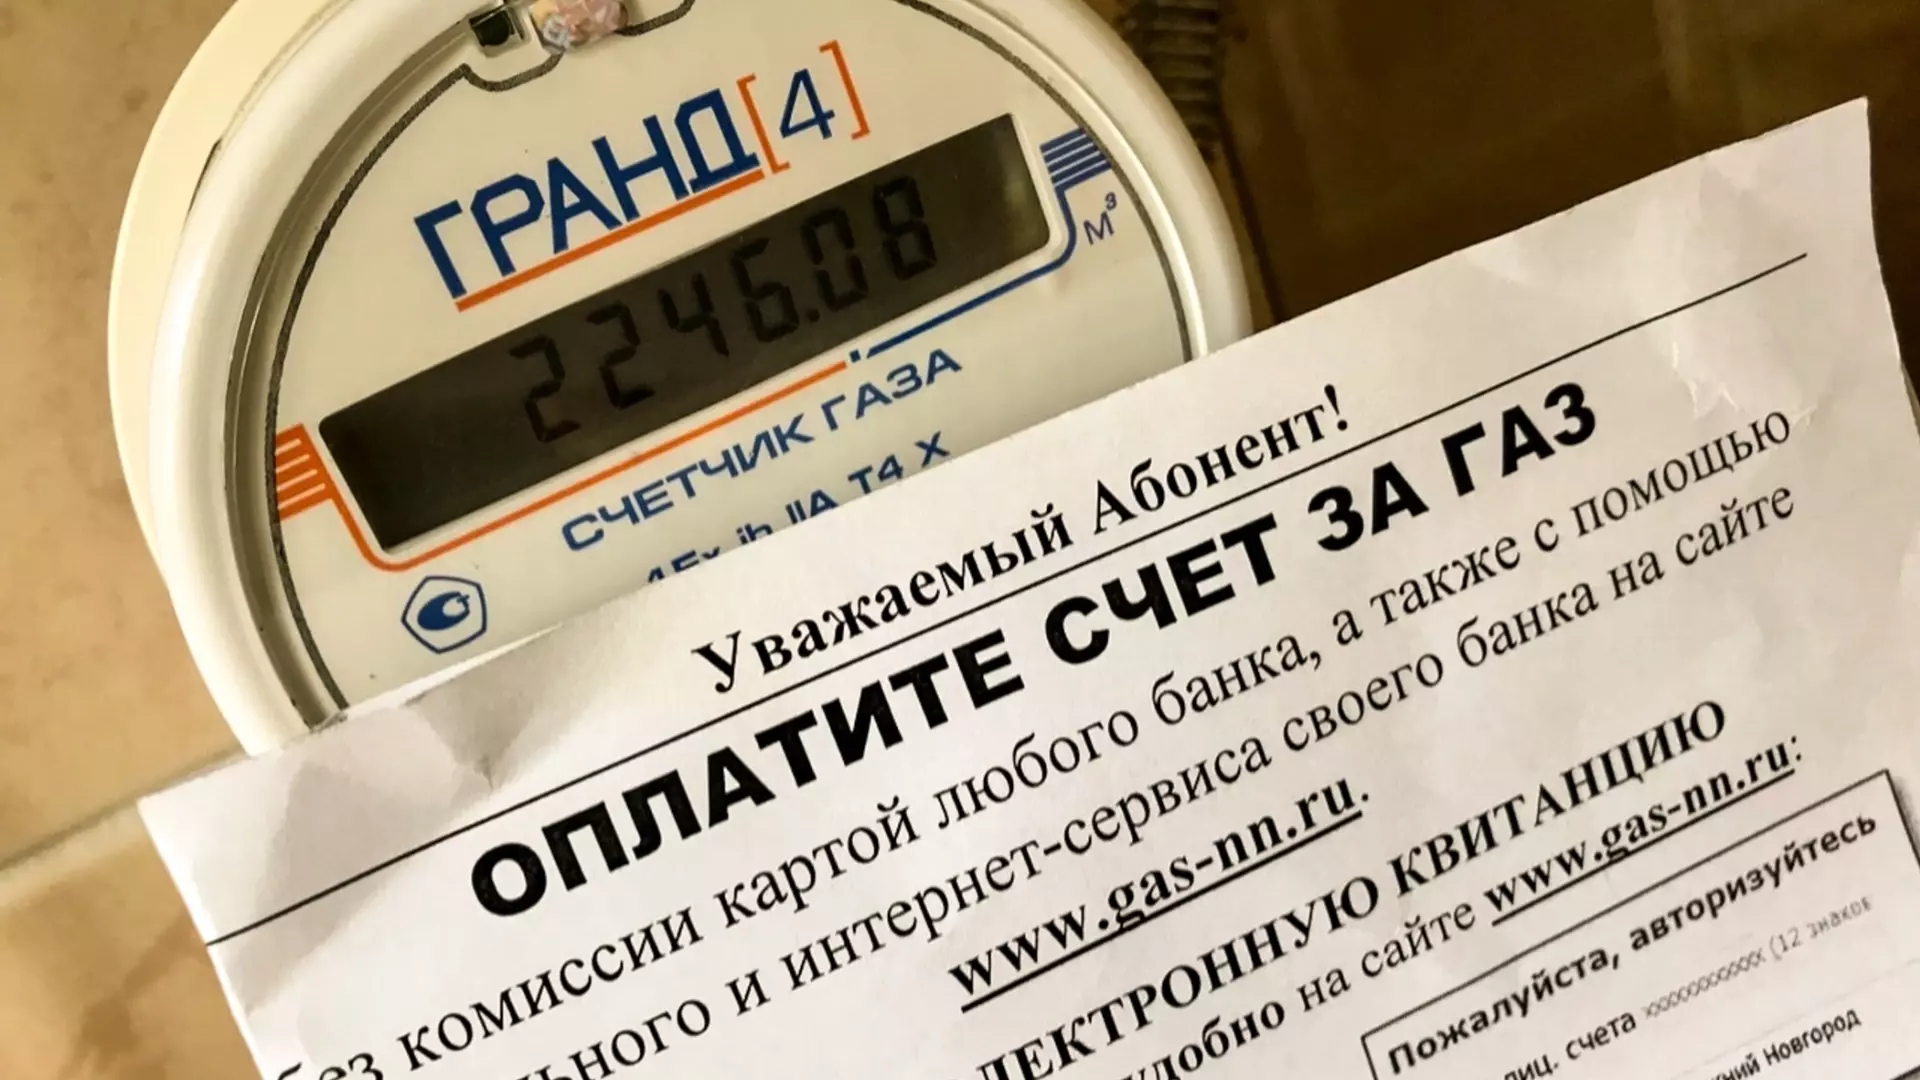 Меру борьбы с завышением тарифов на ЖКУ предложили в Нижегородской области